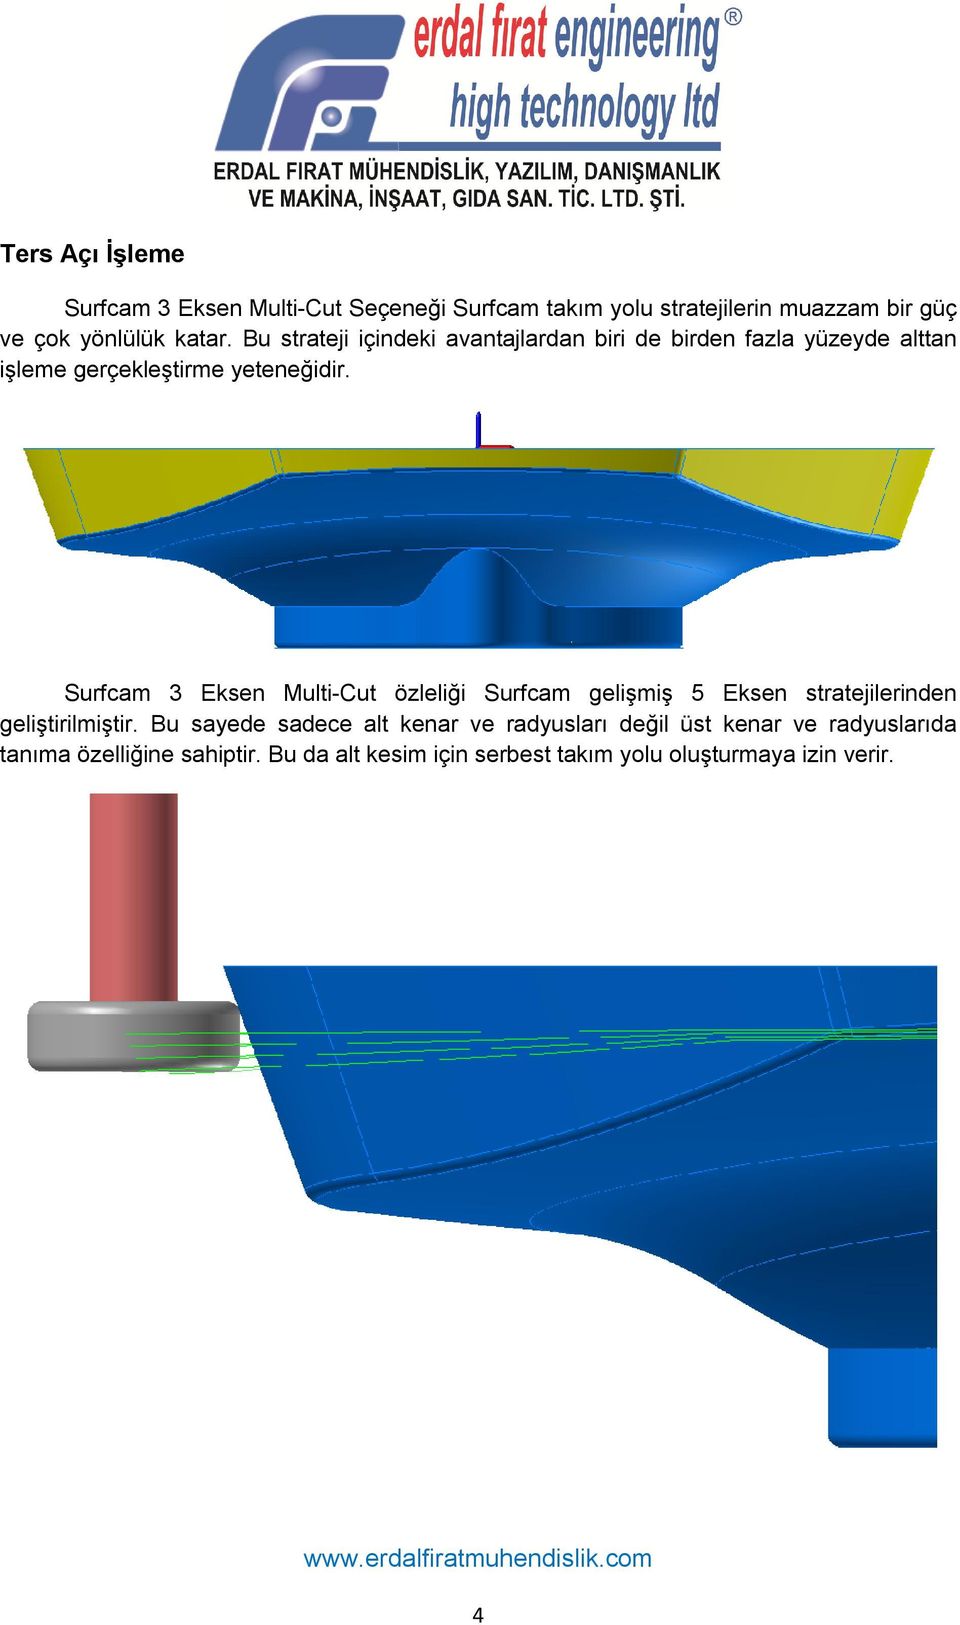 Surfcam 3 Eksen Multi-Cut özleliği Surfcam gelişmiş 5 Eksen stratejilerinden geliştirilmiştir.